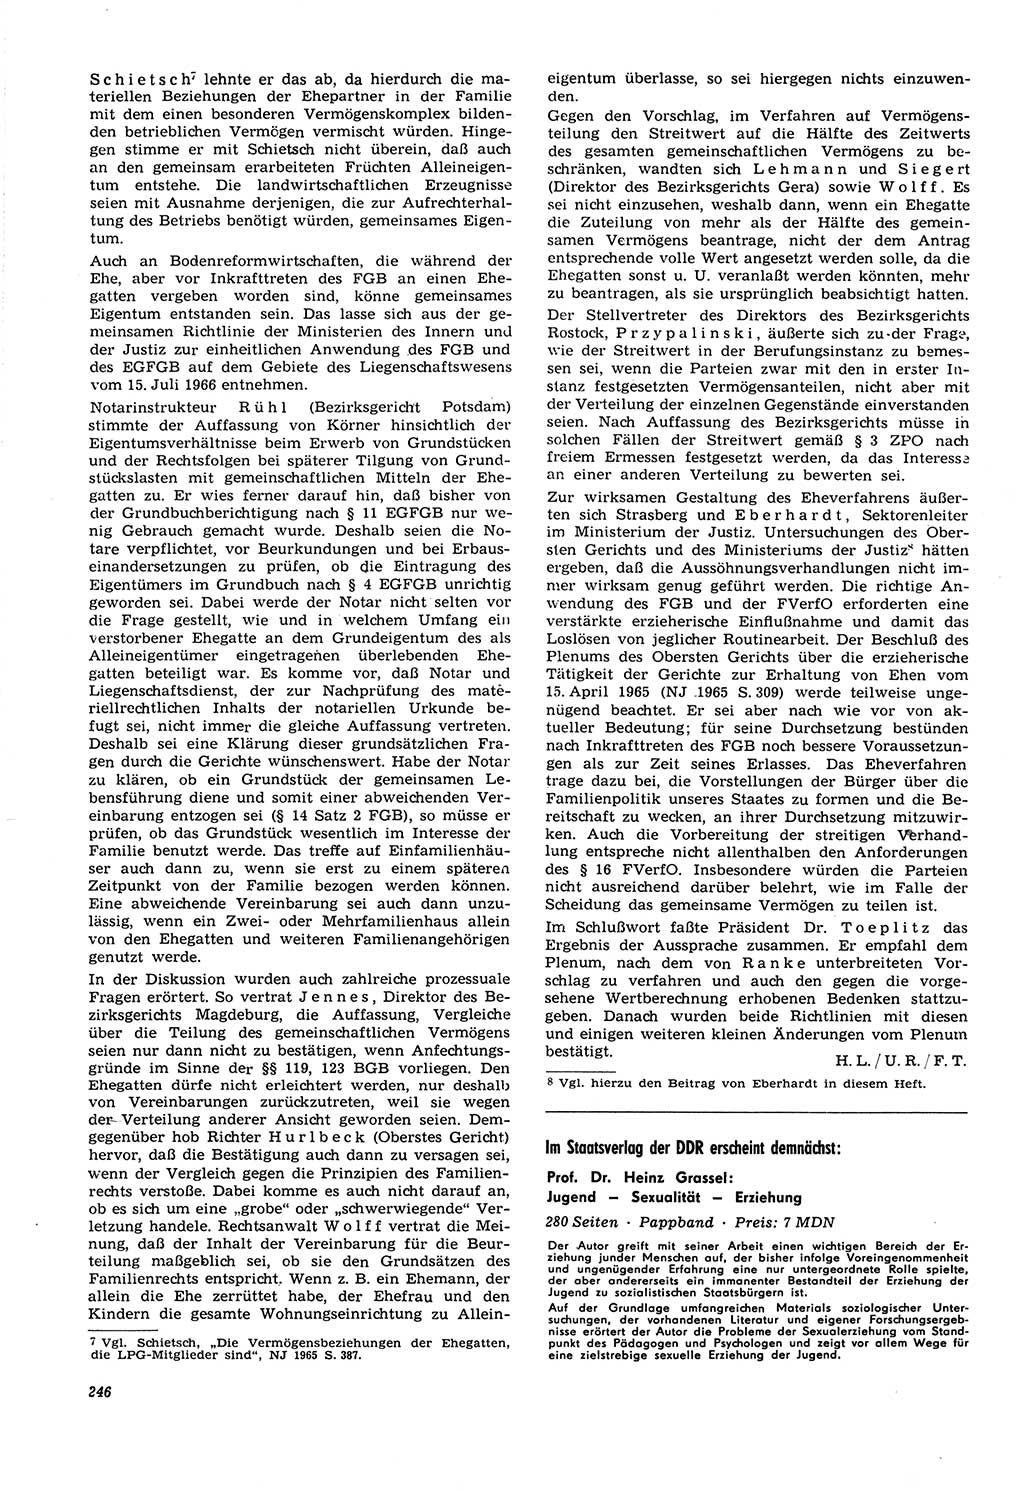 Neue Justiz (NJ), Zeitschrift für Recht und Rechtswissenschaft [Deutsche Demokratische Republik (DDR)], 21. Jahrgang 1967, Seite 246 (NJ DDR 1967, S. 246)